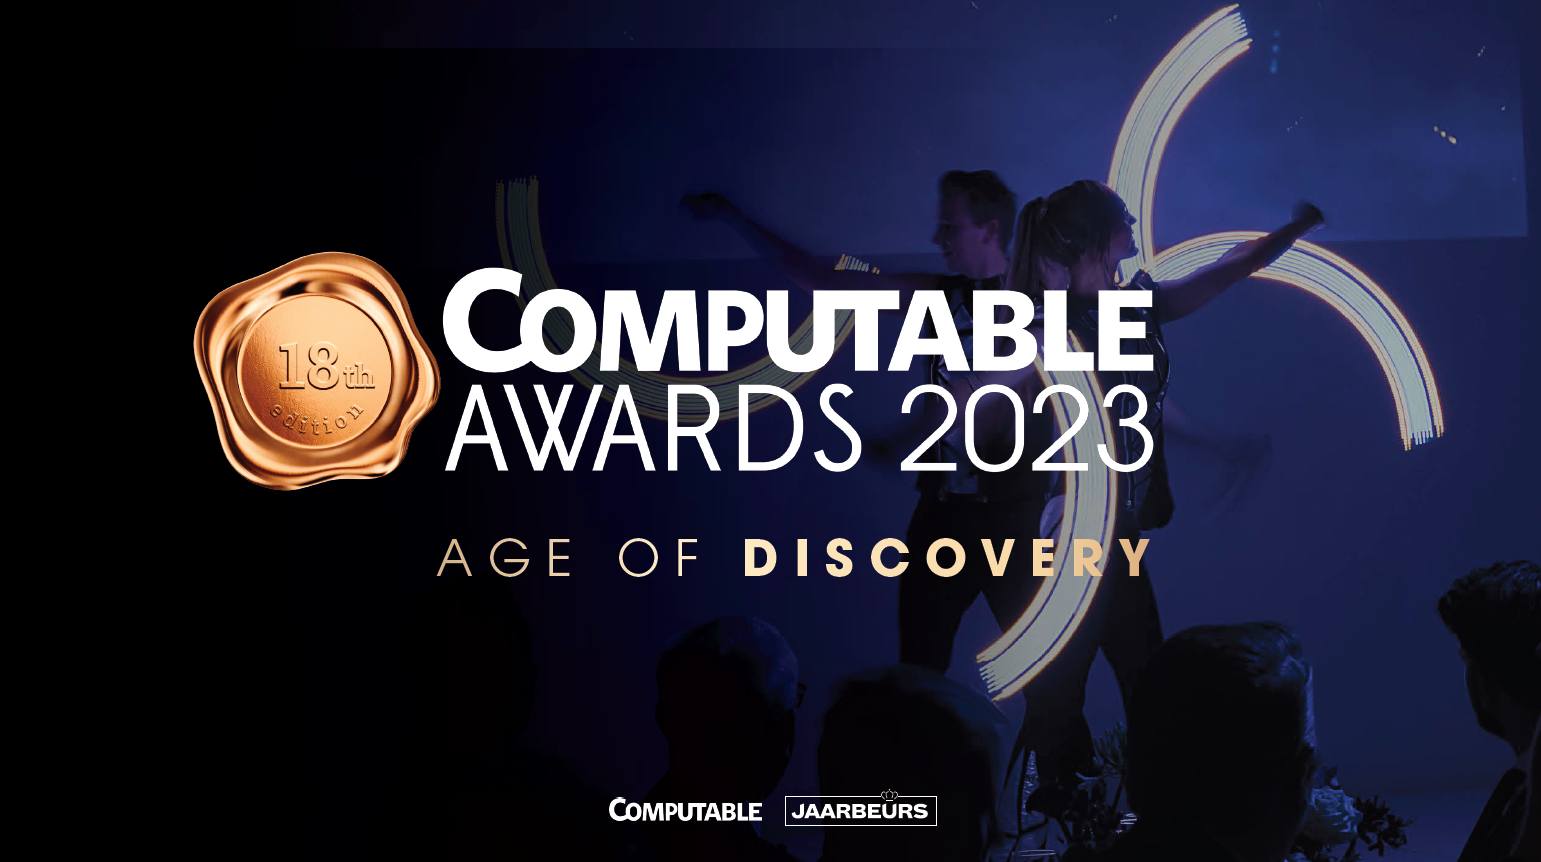 Wint de nlt-module Digitale Technologie een Computable Award? Stem nu mee